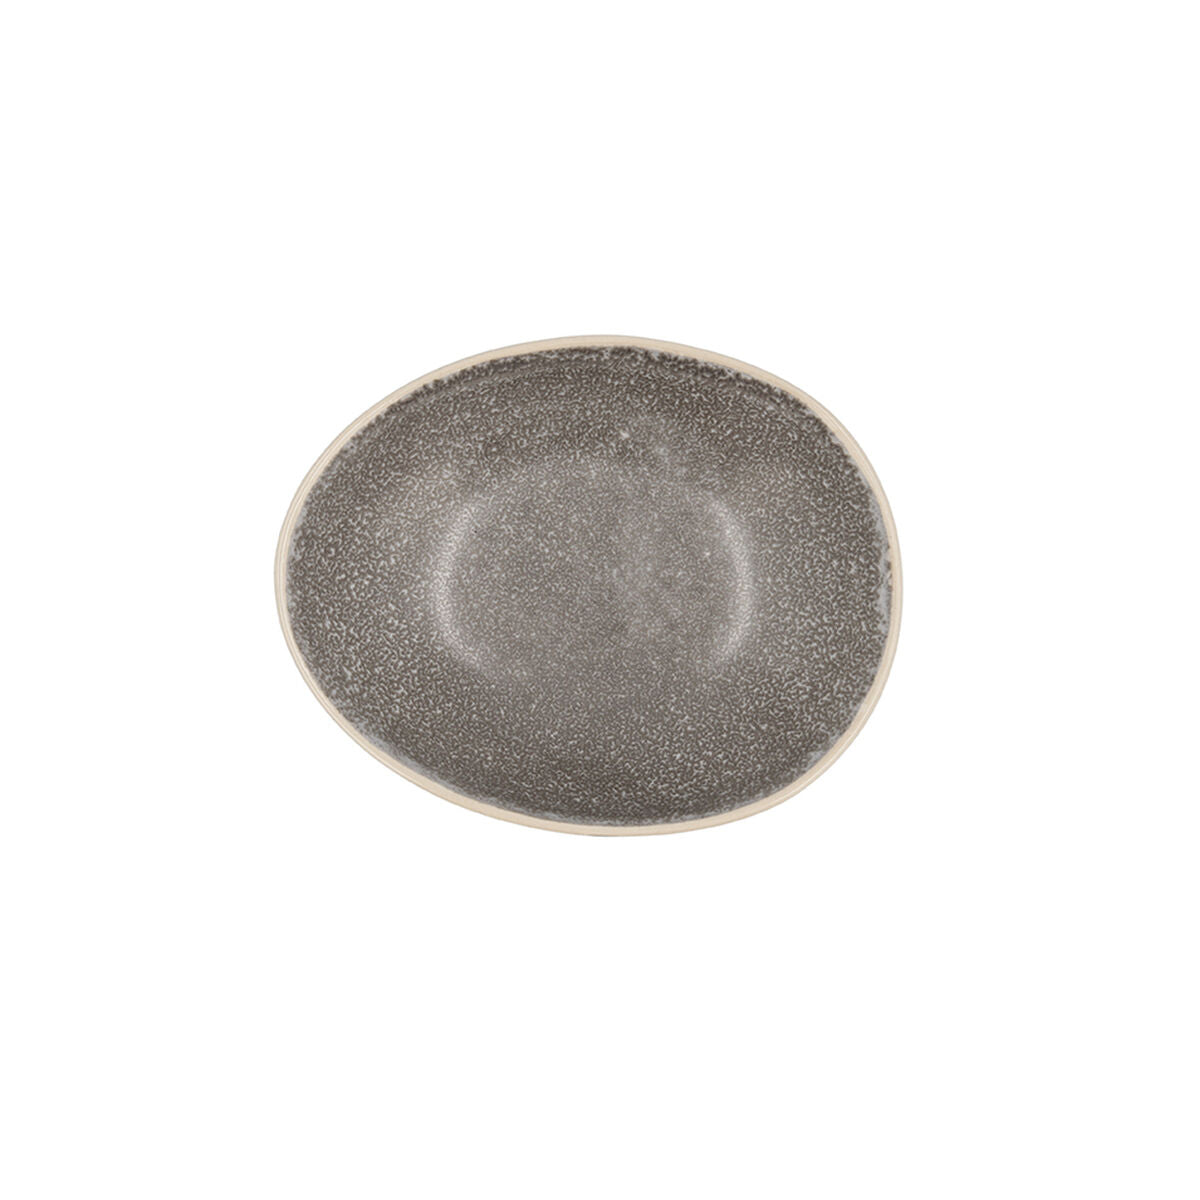 Bowl Bidasoa Gio 15 x 12,5 x 4 cm Ceramic Grey (6 Units)